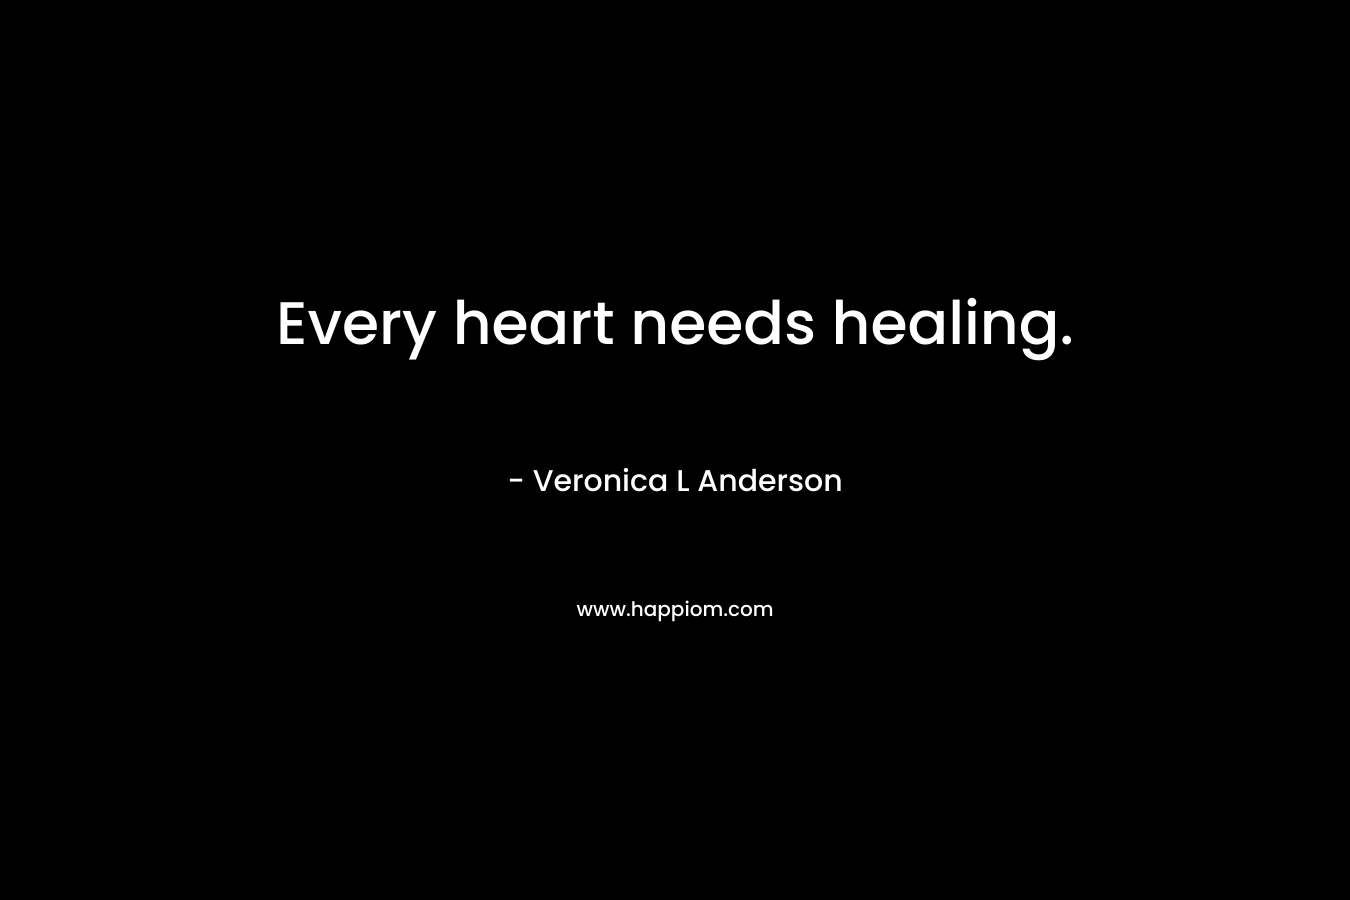 Every heart needs healing.